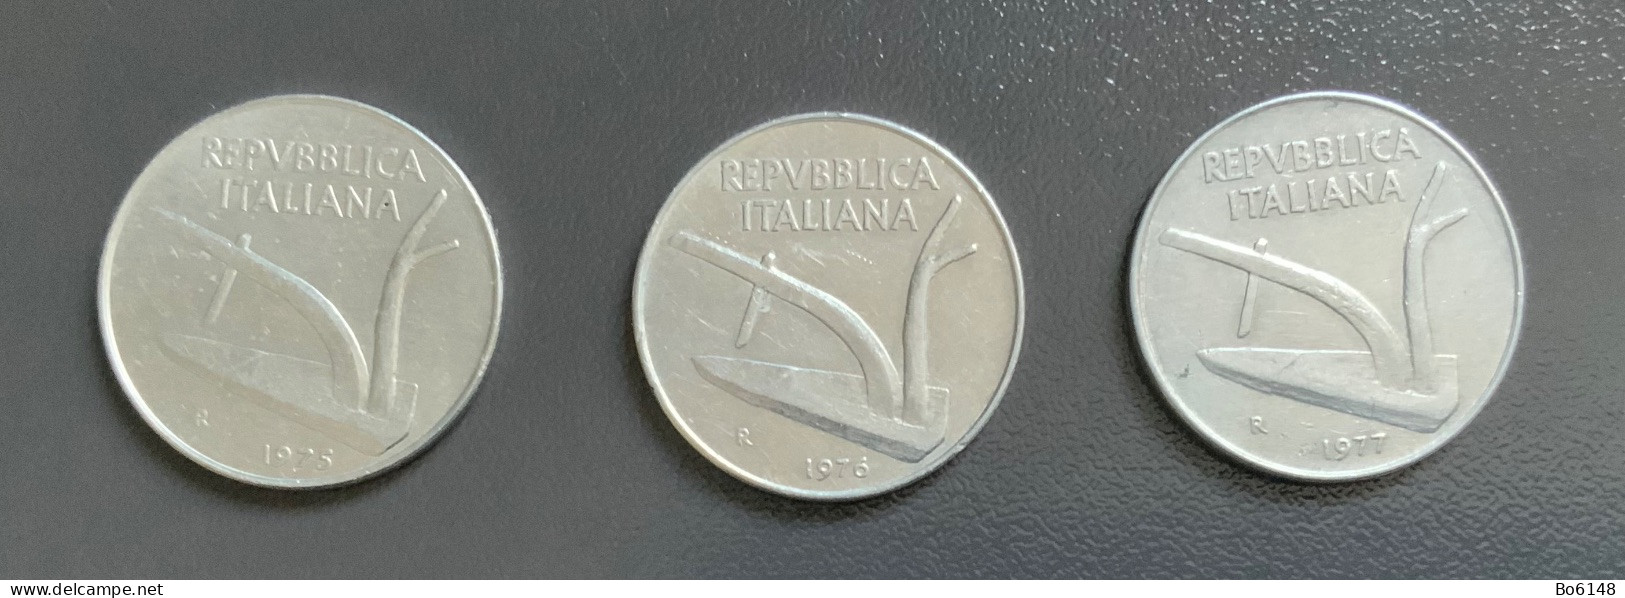 ITALIA  - 3 Monete 10 LIRE  Spiga  - Del 1975 , 1976 E 1977 - 10 Lire